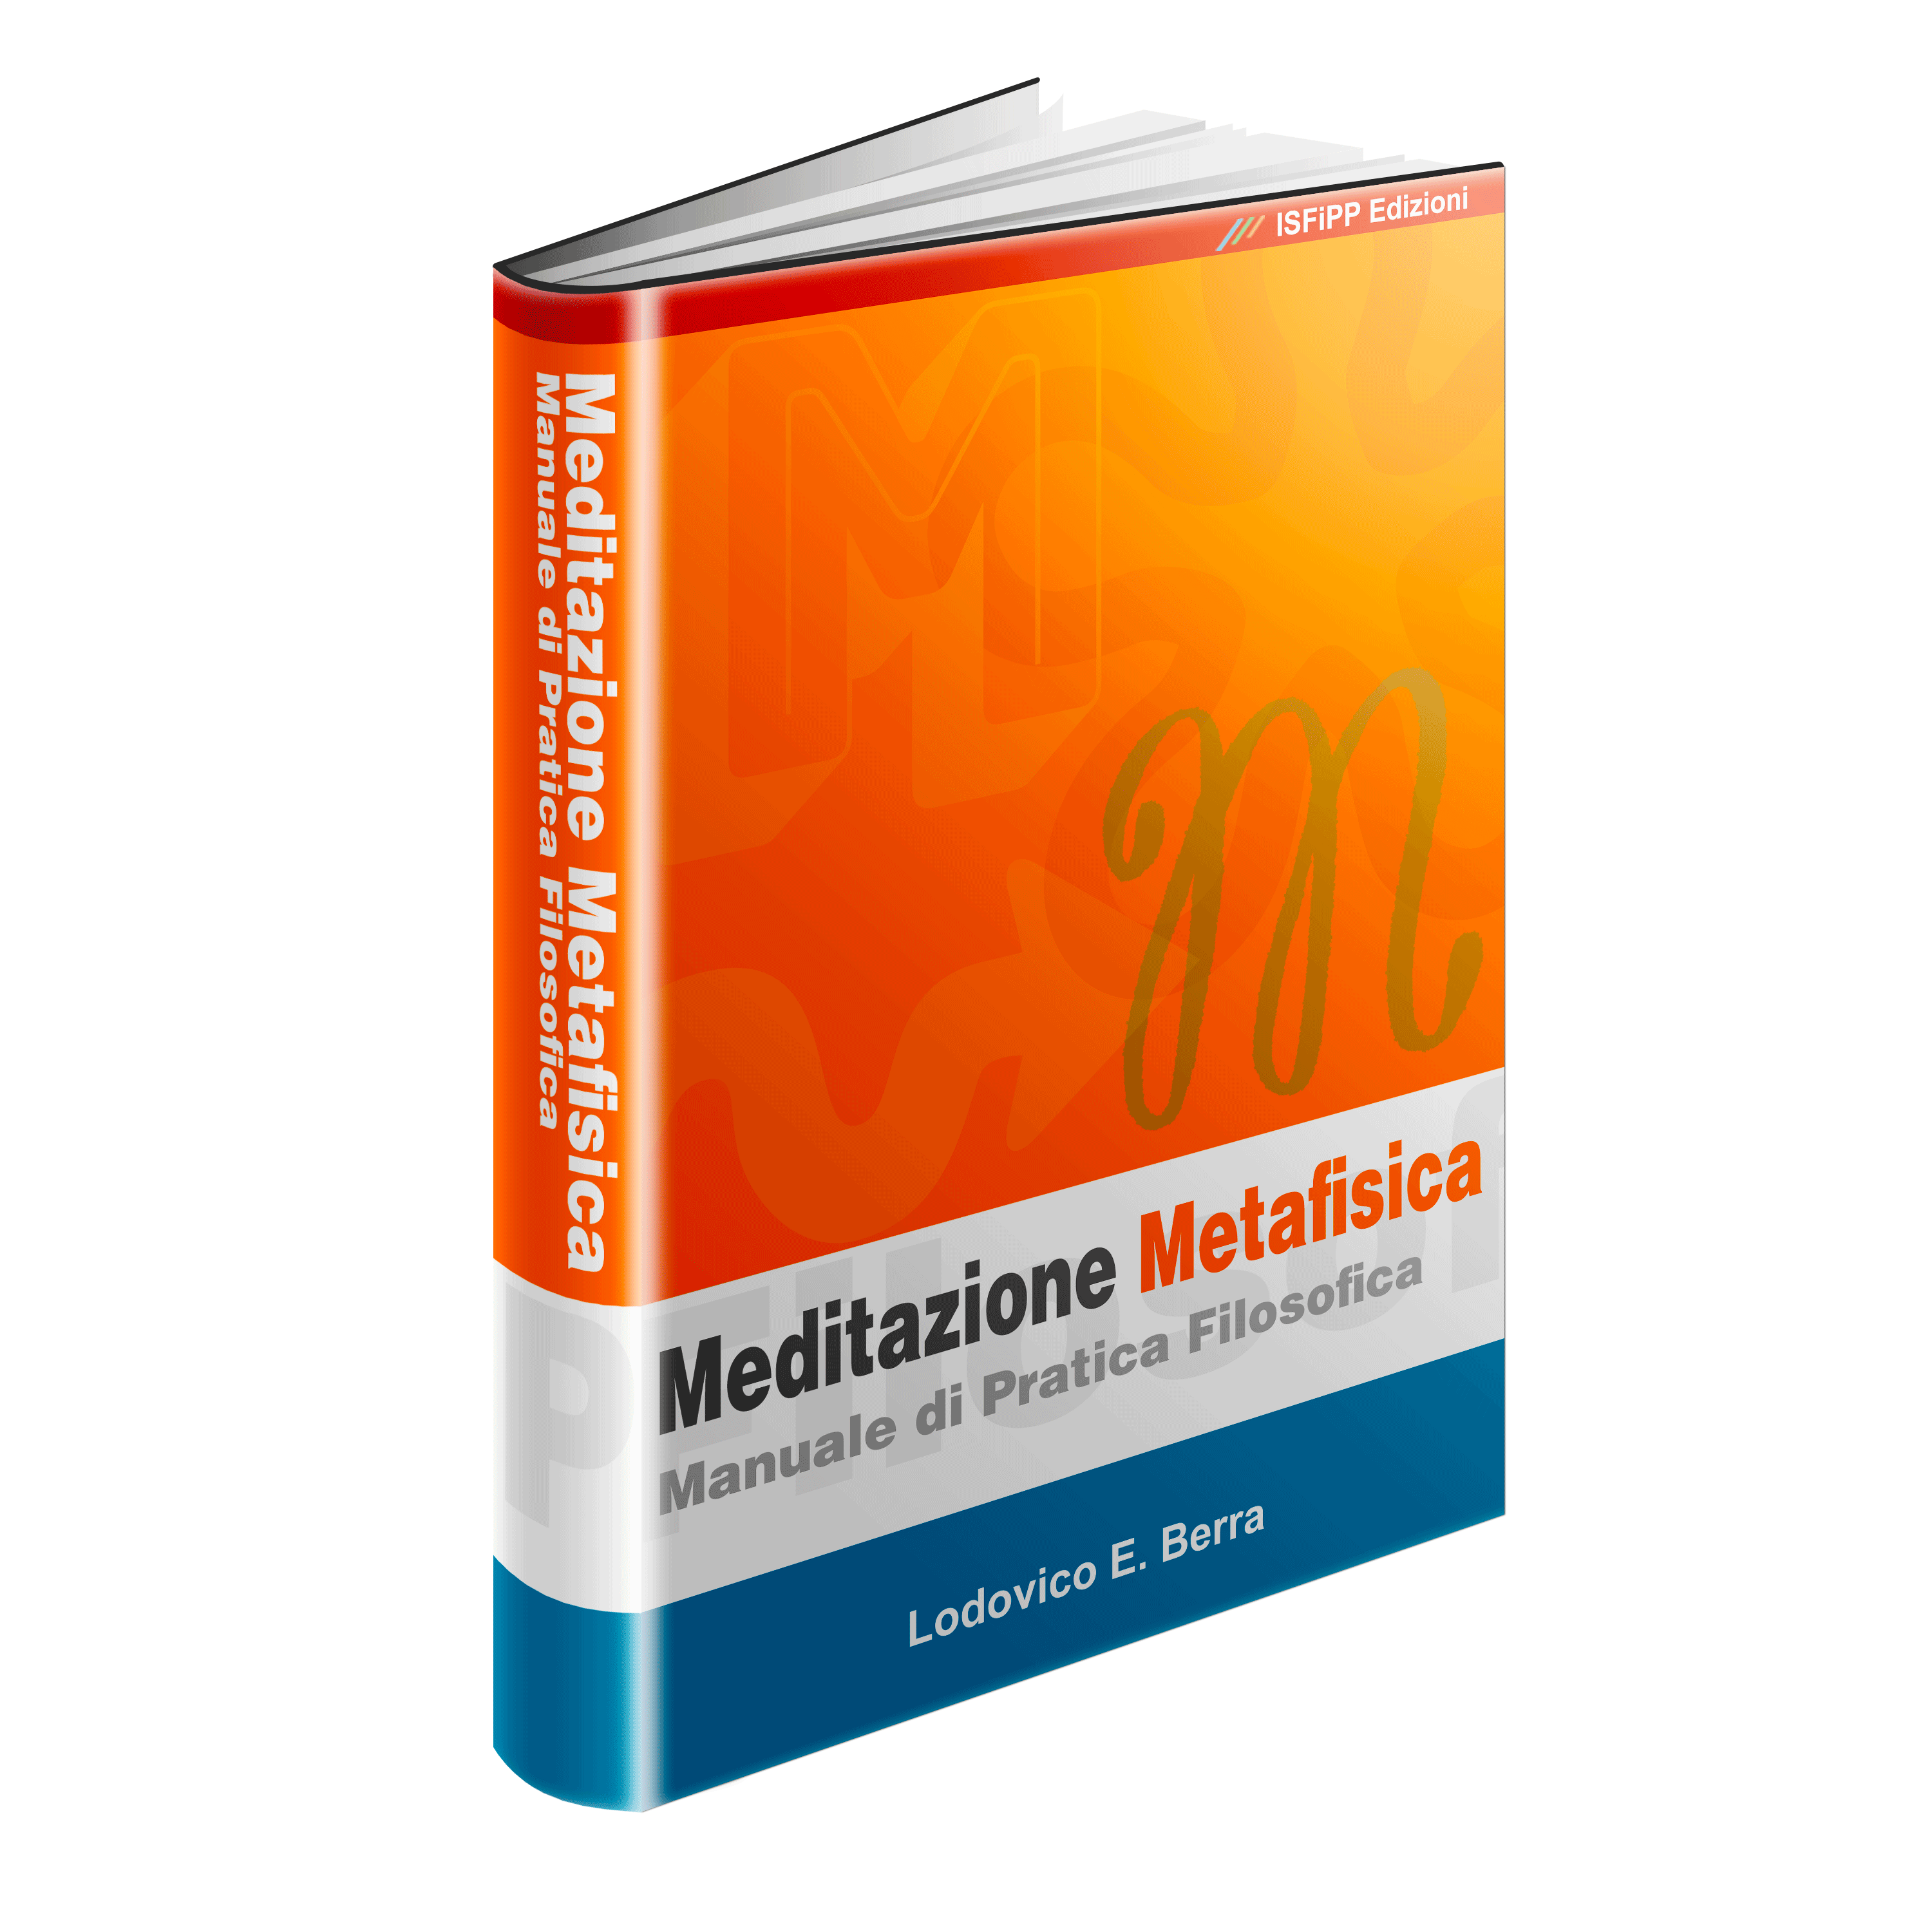 Meditazione Metafisica. Manuale di pratica filosofica